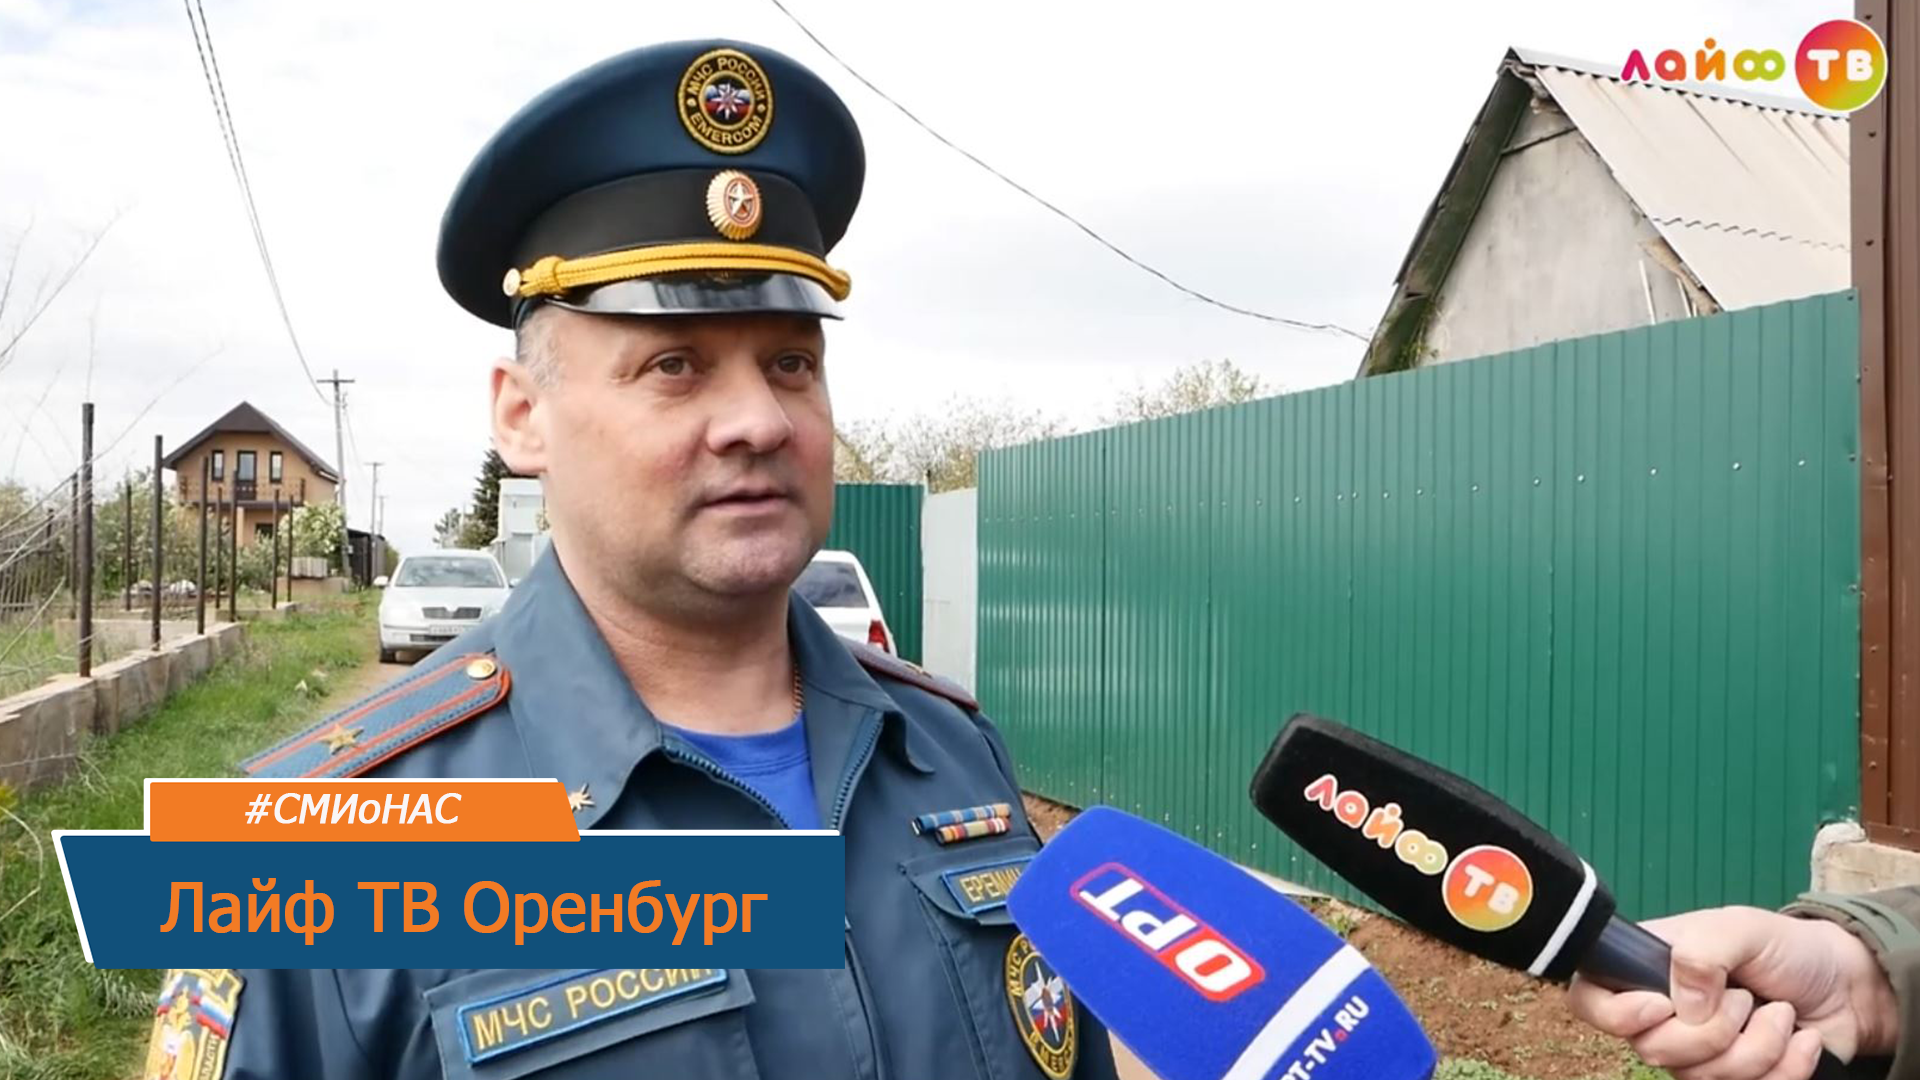 Сотрудники МЧС предупреждают оренбуржцев об опасности возникновения пожаров - Лайф ТВ Оренбург